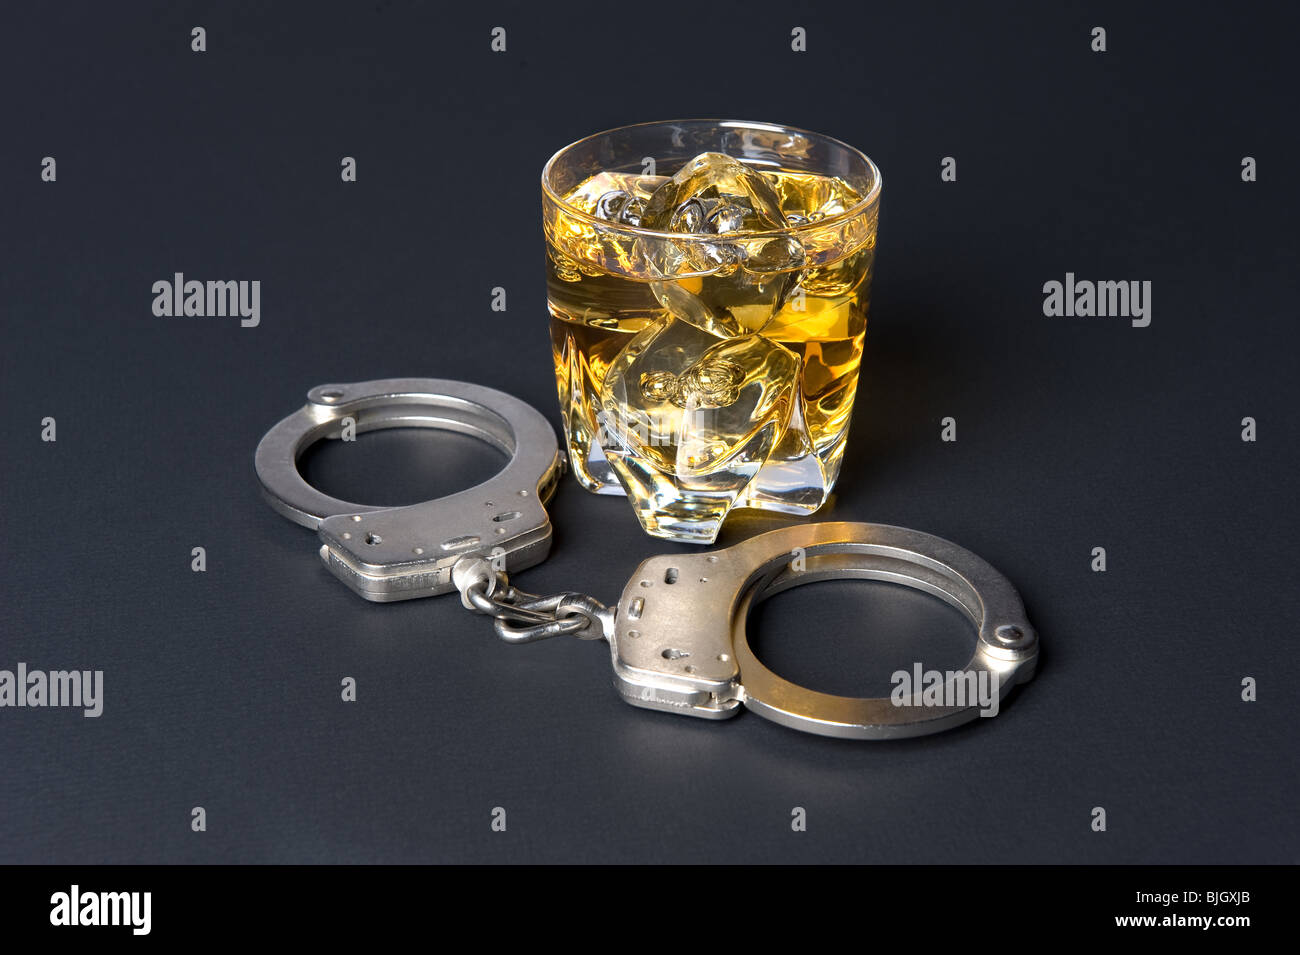 Une paire de menottes à côté d'un verre de whisky en déduit que boire et conduire est illégale. Banque D'Images